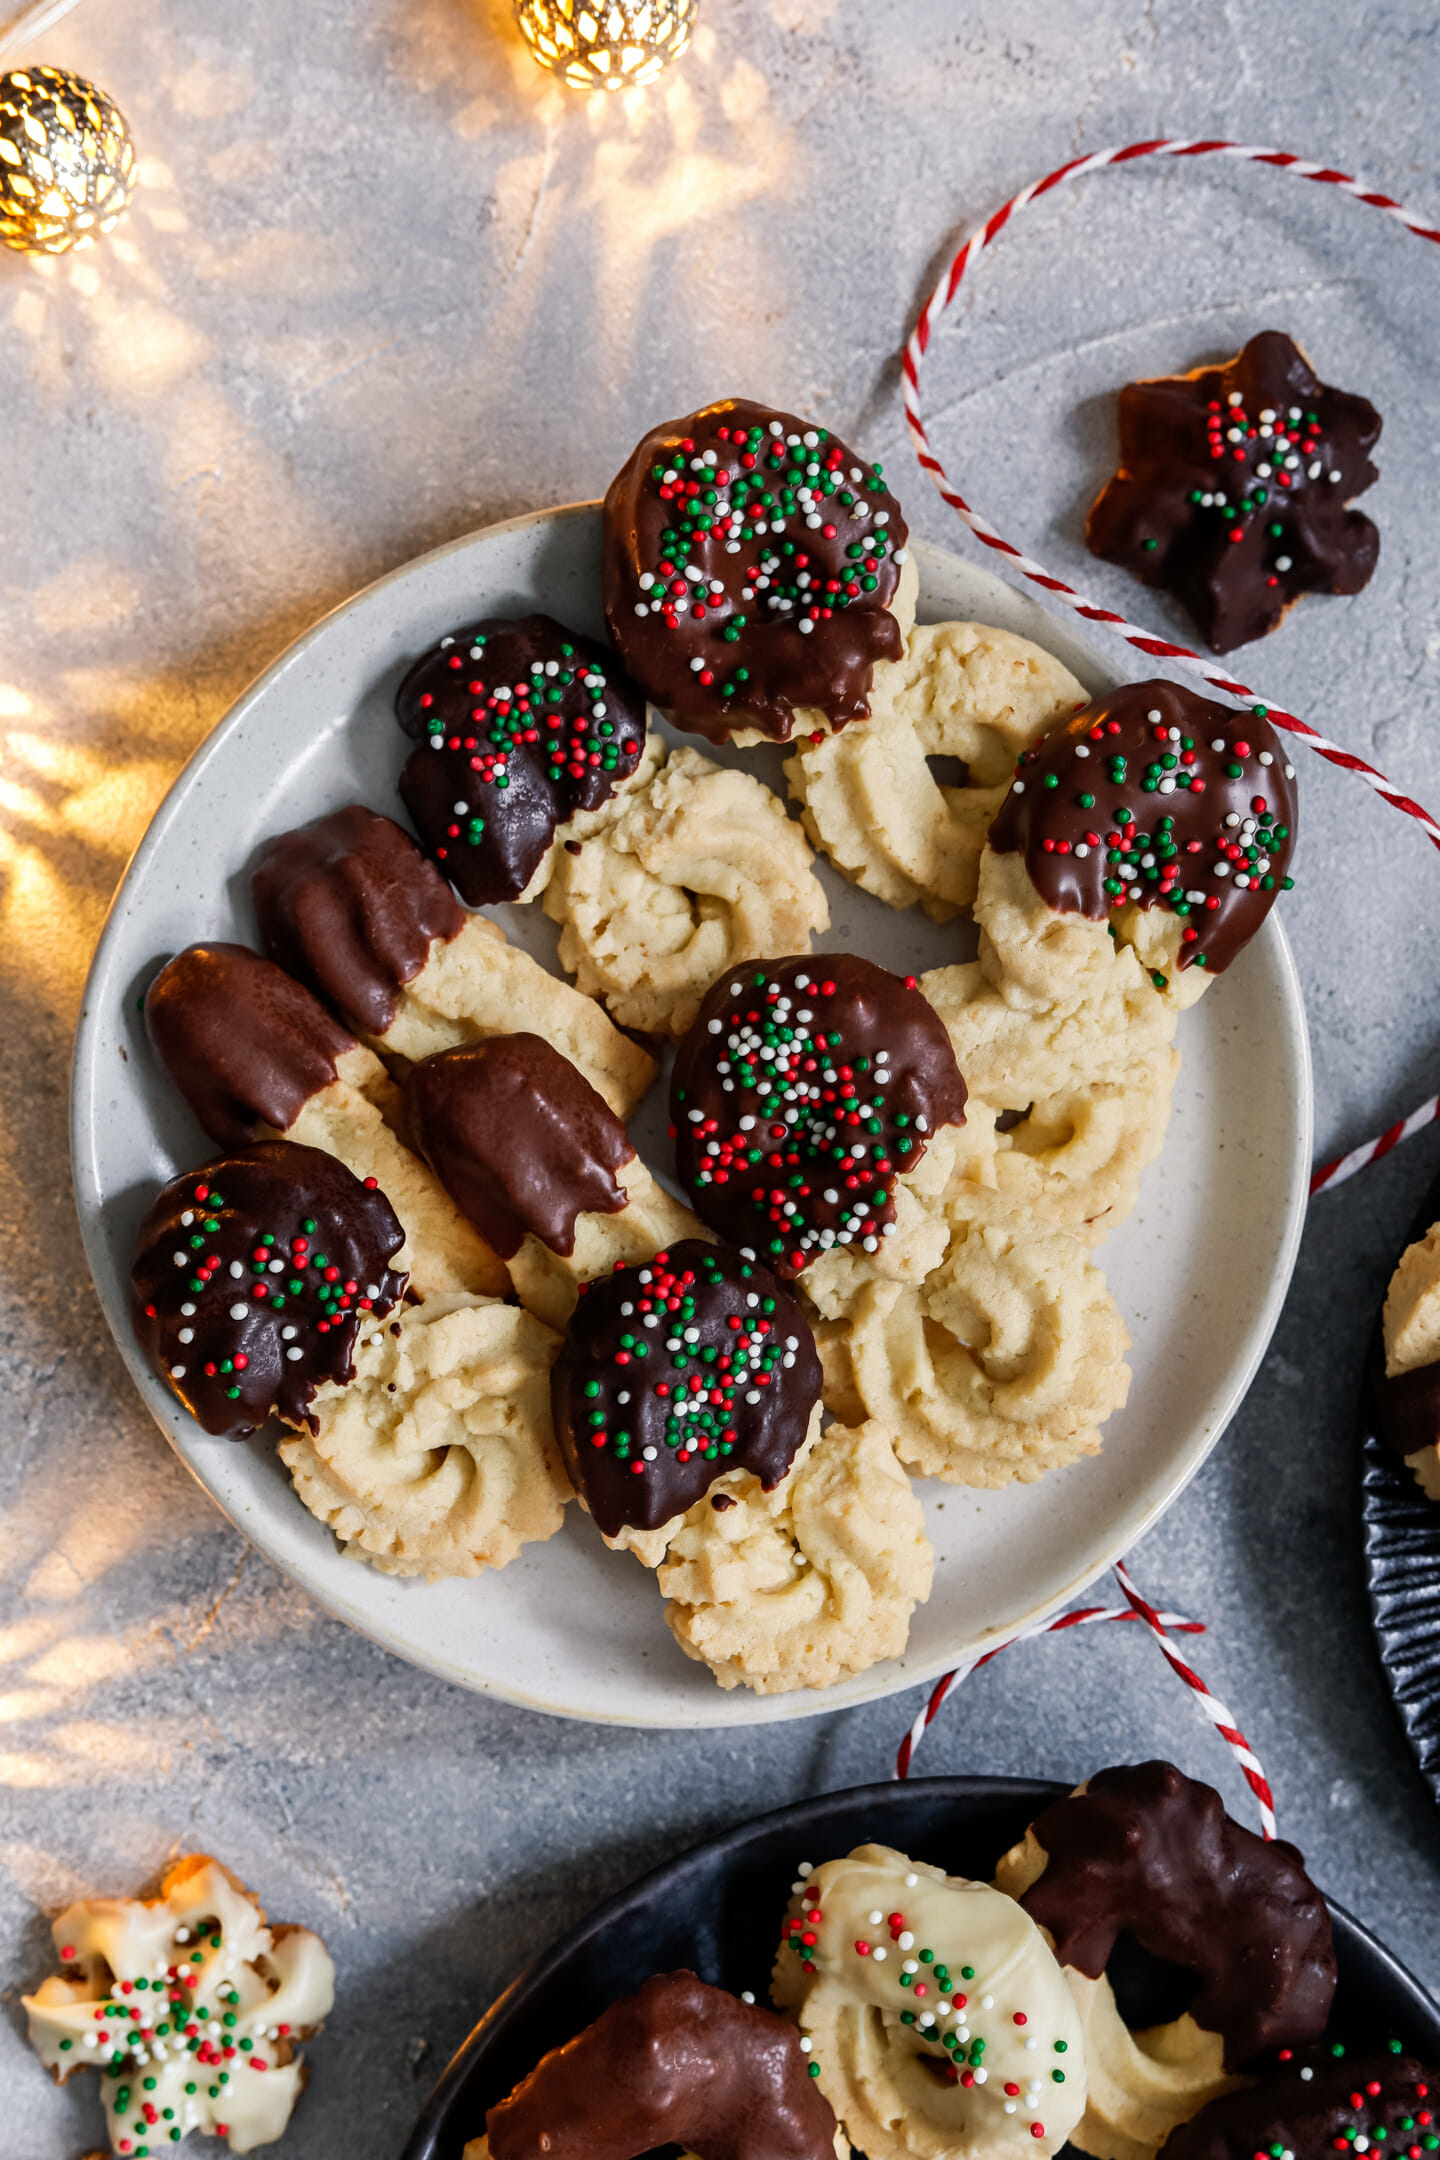 Weihnachtliches Spritzgebäck mit Mandeln und Schokolade, dekoriert mit bunten Perlen und angerichtet auf einem dunklen Teller